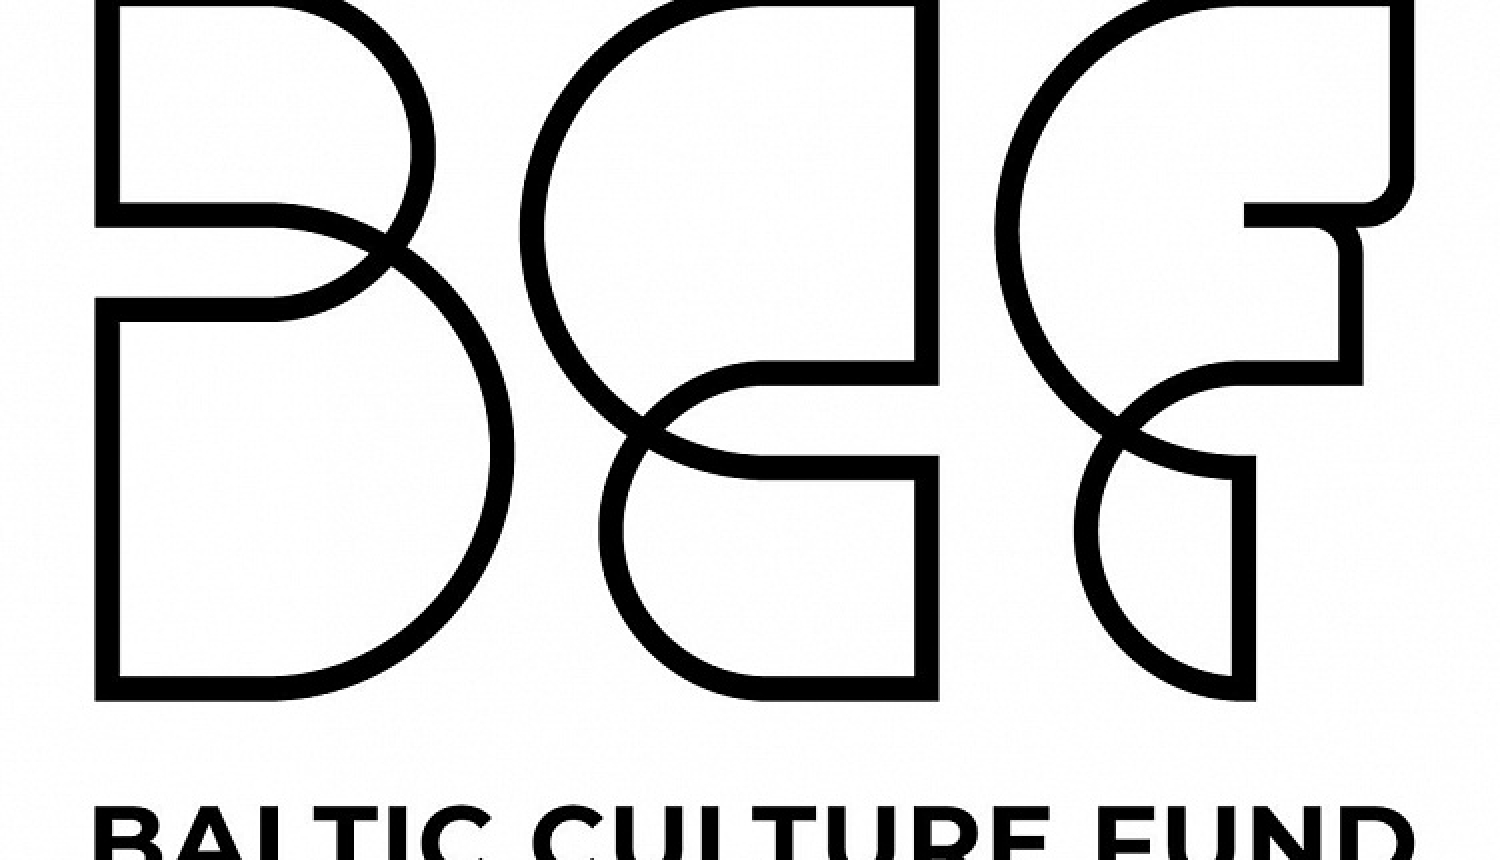 Jaunizveidotais Baltijas Kultūras fonds saņem Ziemeļvalstu finansējumu